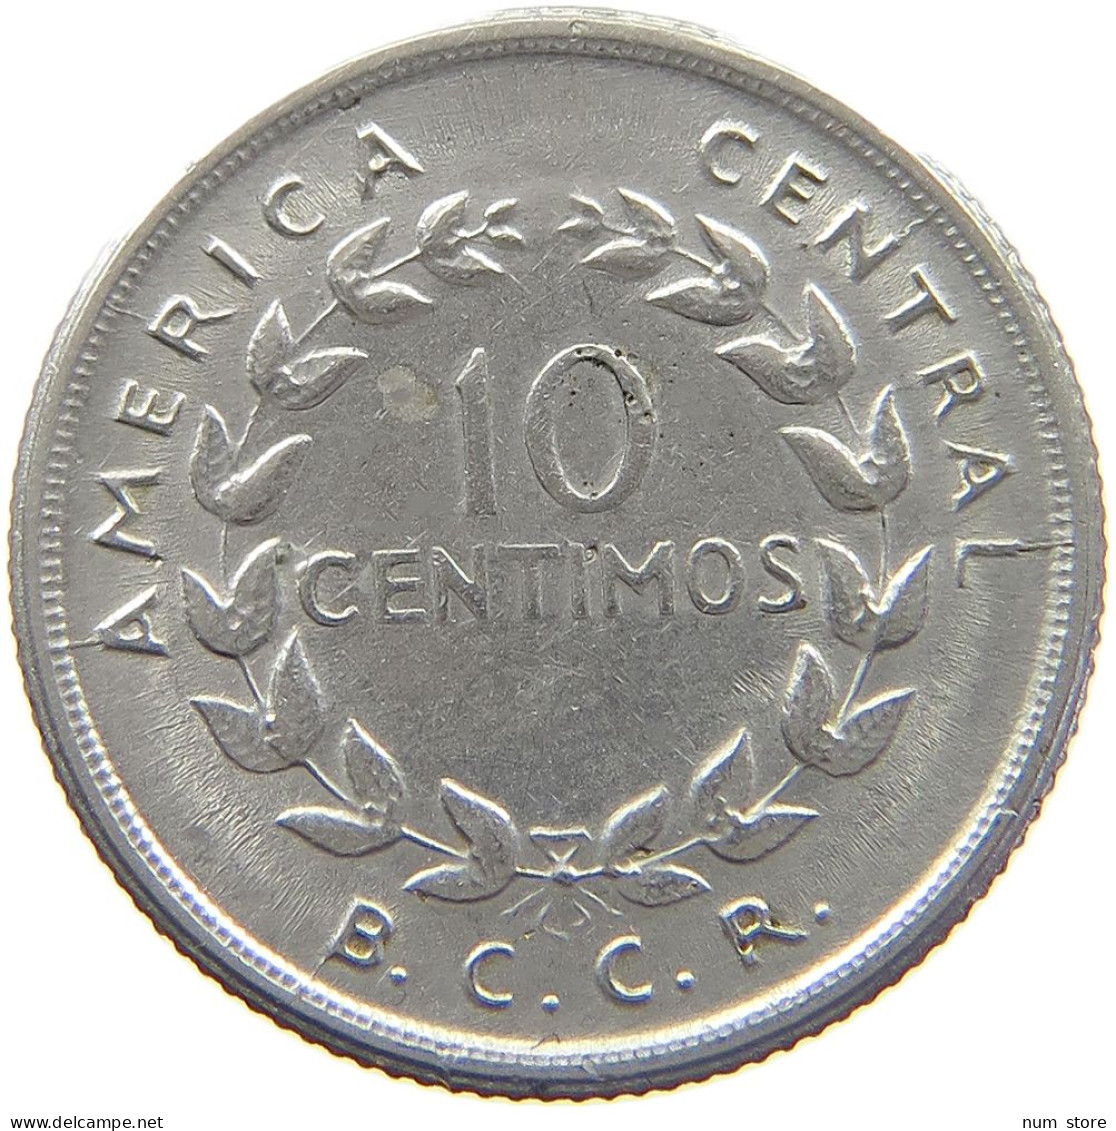 COSTA RICA 10 CENTIMOS 1953  #MA 025482 - Costa Rica